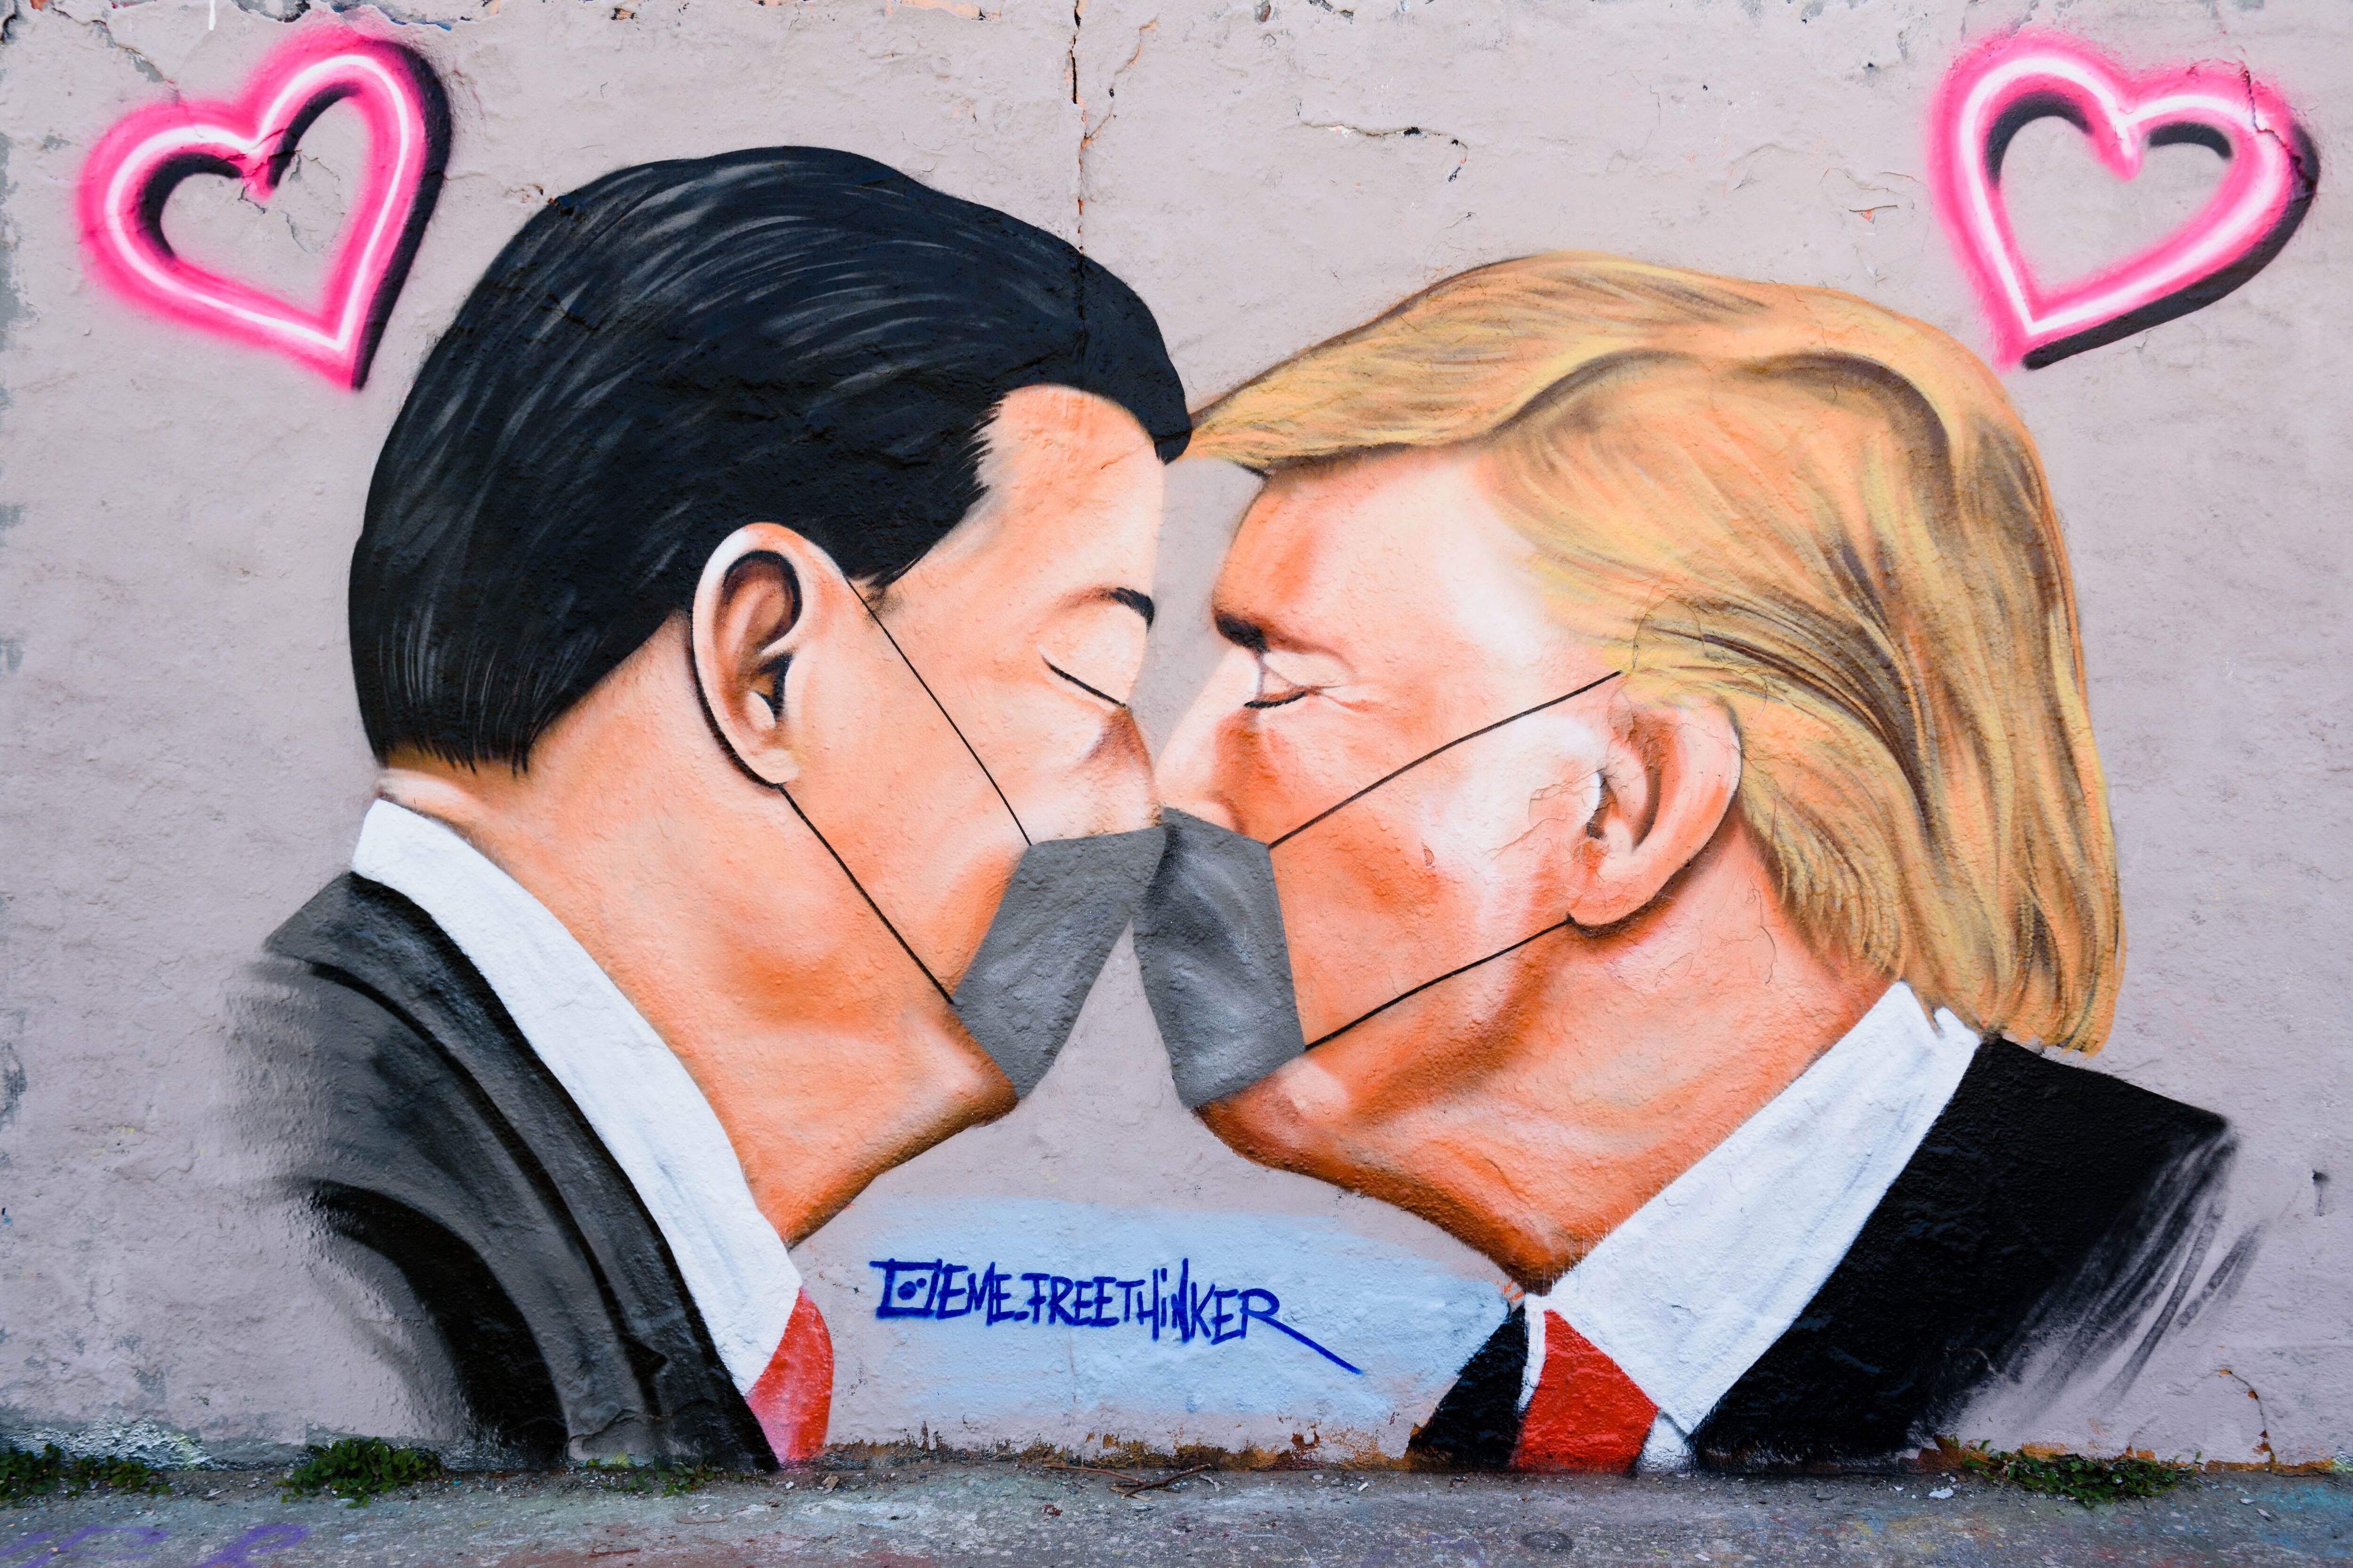 Mural de Donald Trump Xi Jinping besándose con máscaras en Berlín, el pasado mes de abril.